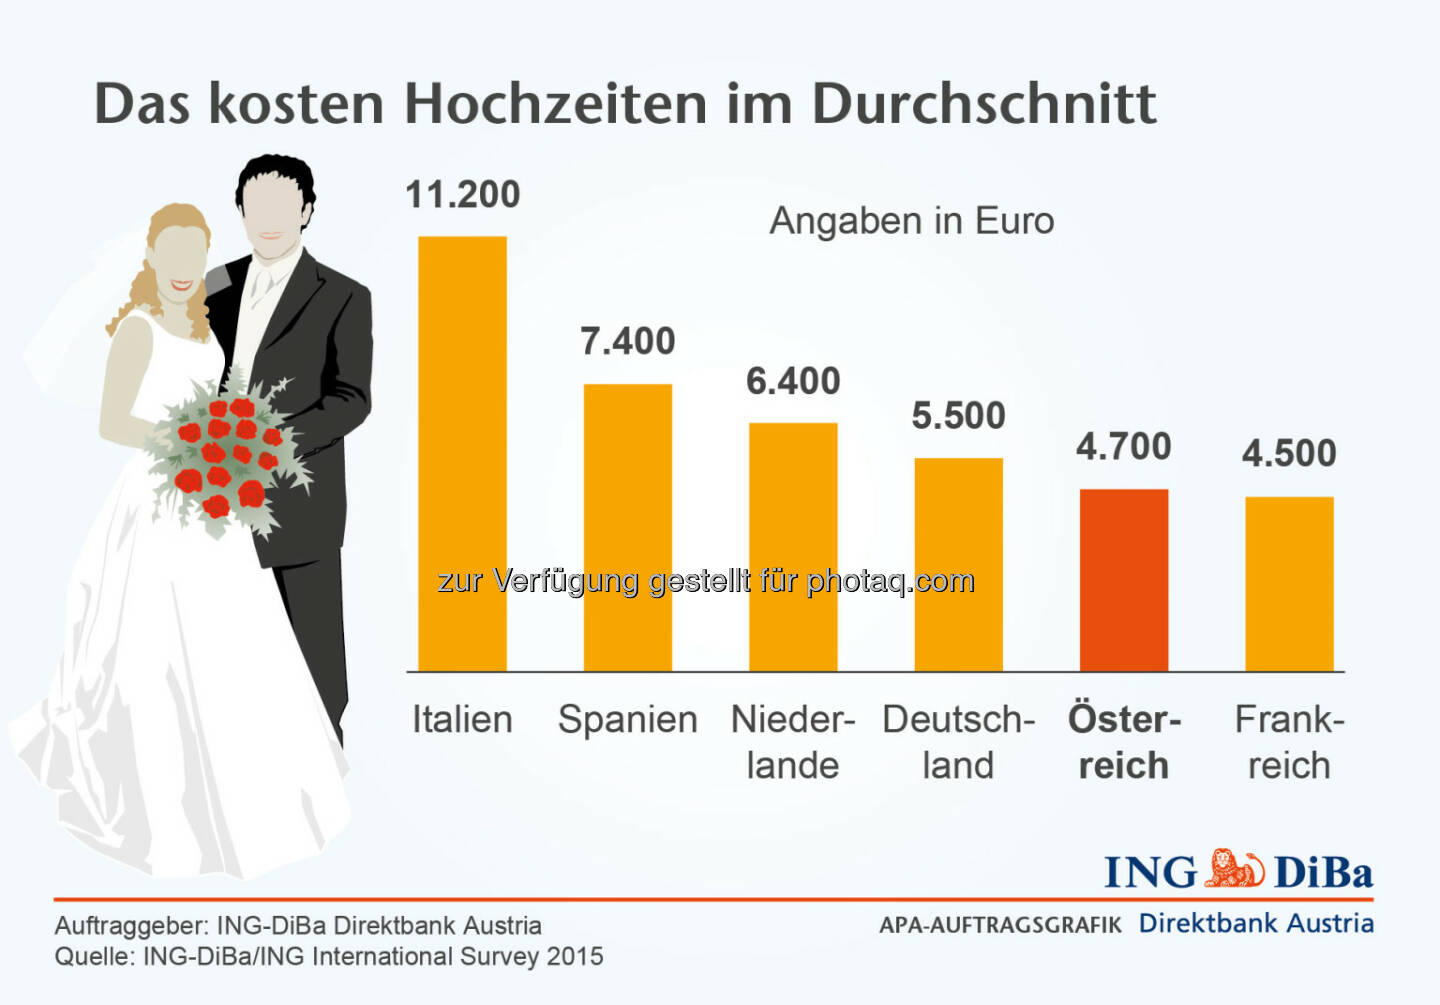 ING DiBa: Das Kosten Hochzeiten im Durchschnitt